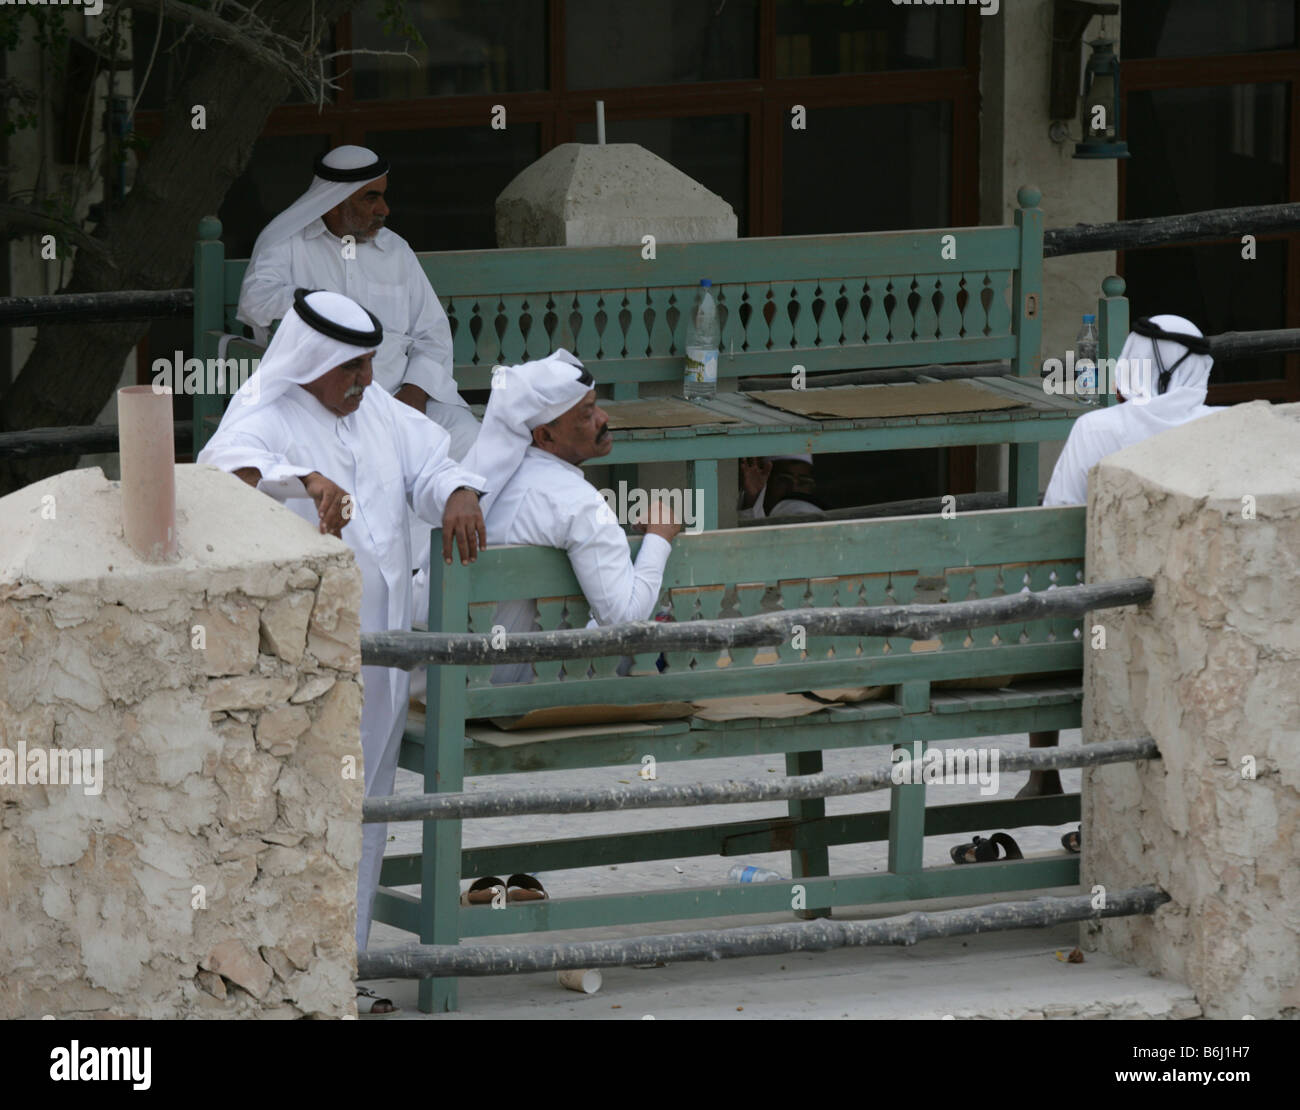 Les hommes en costumes traditionnels du Qatar, Doha, Qatar Banque D'Images